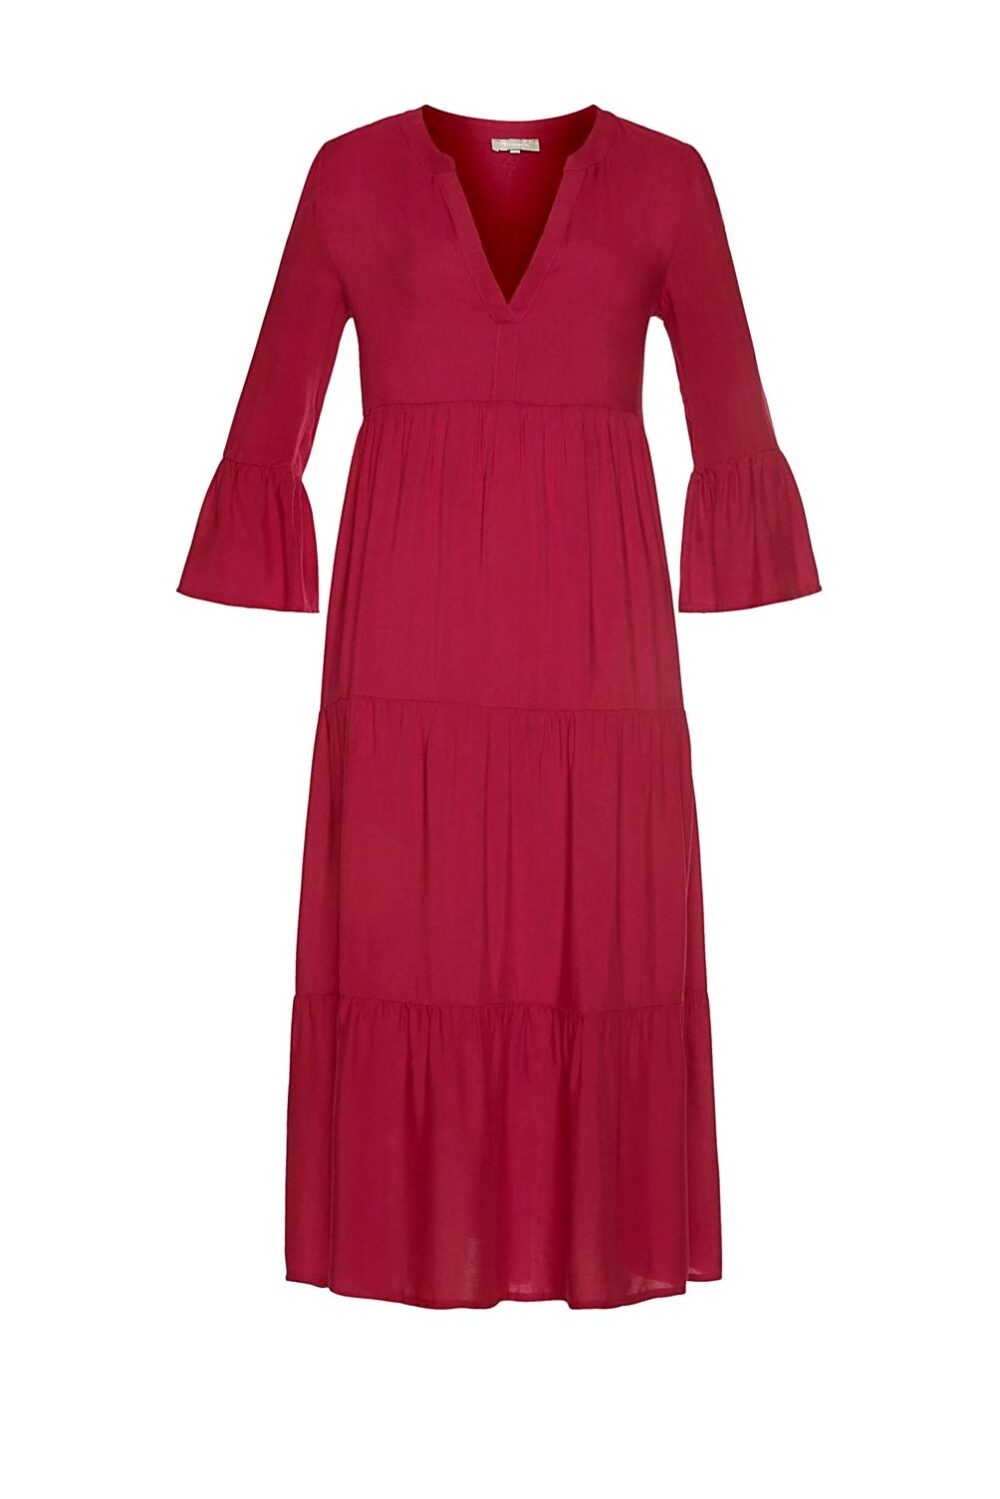 999.095 Damen Kleid, rot von Tamaris